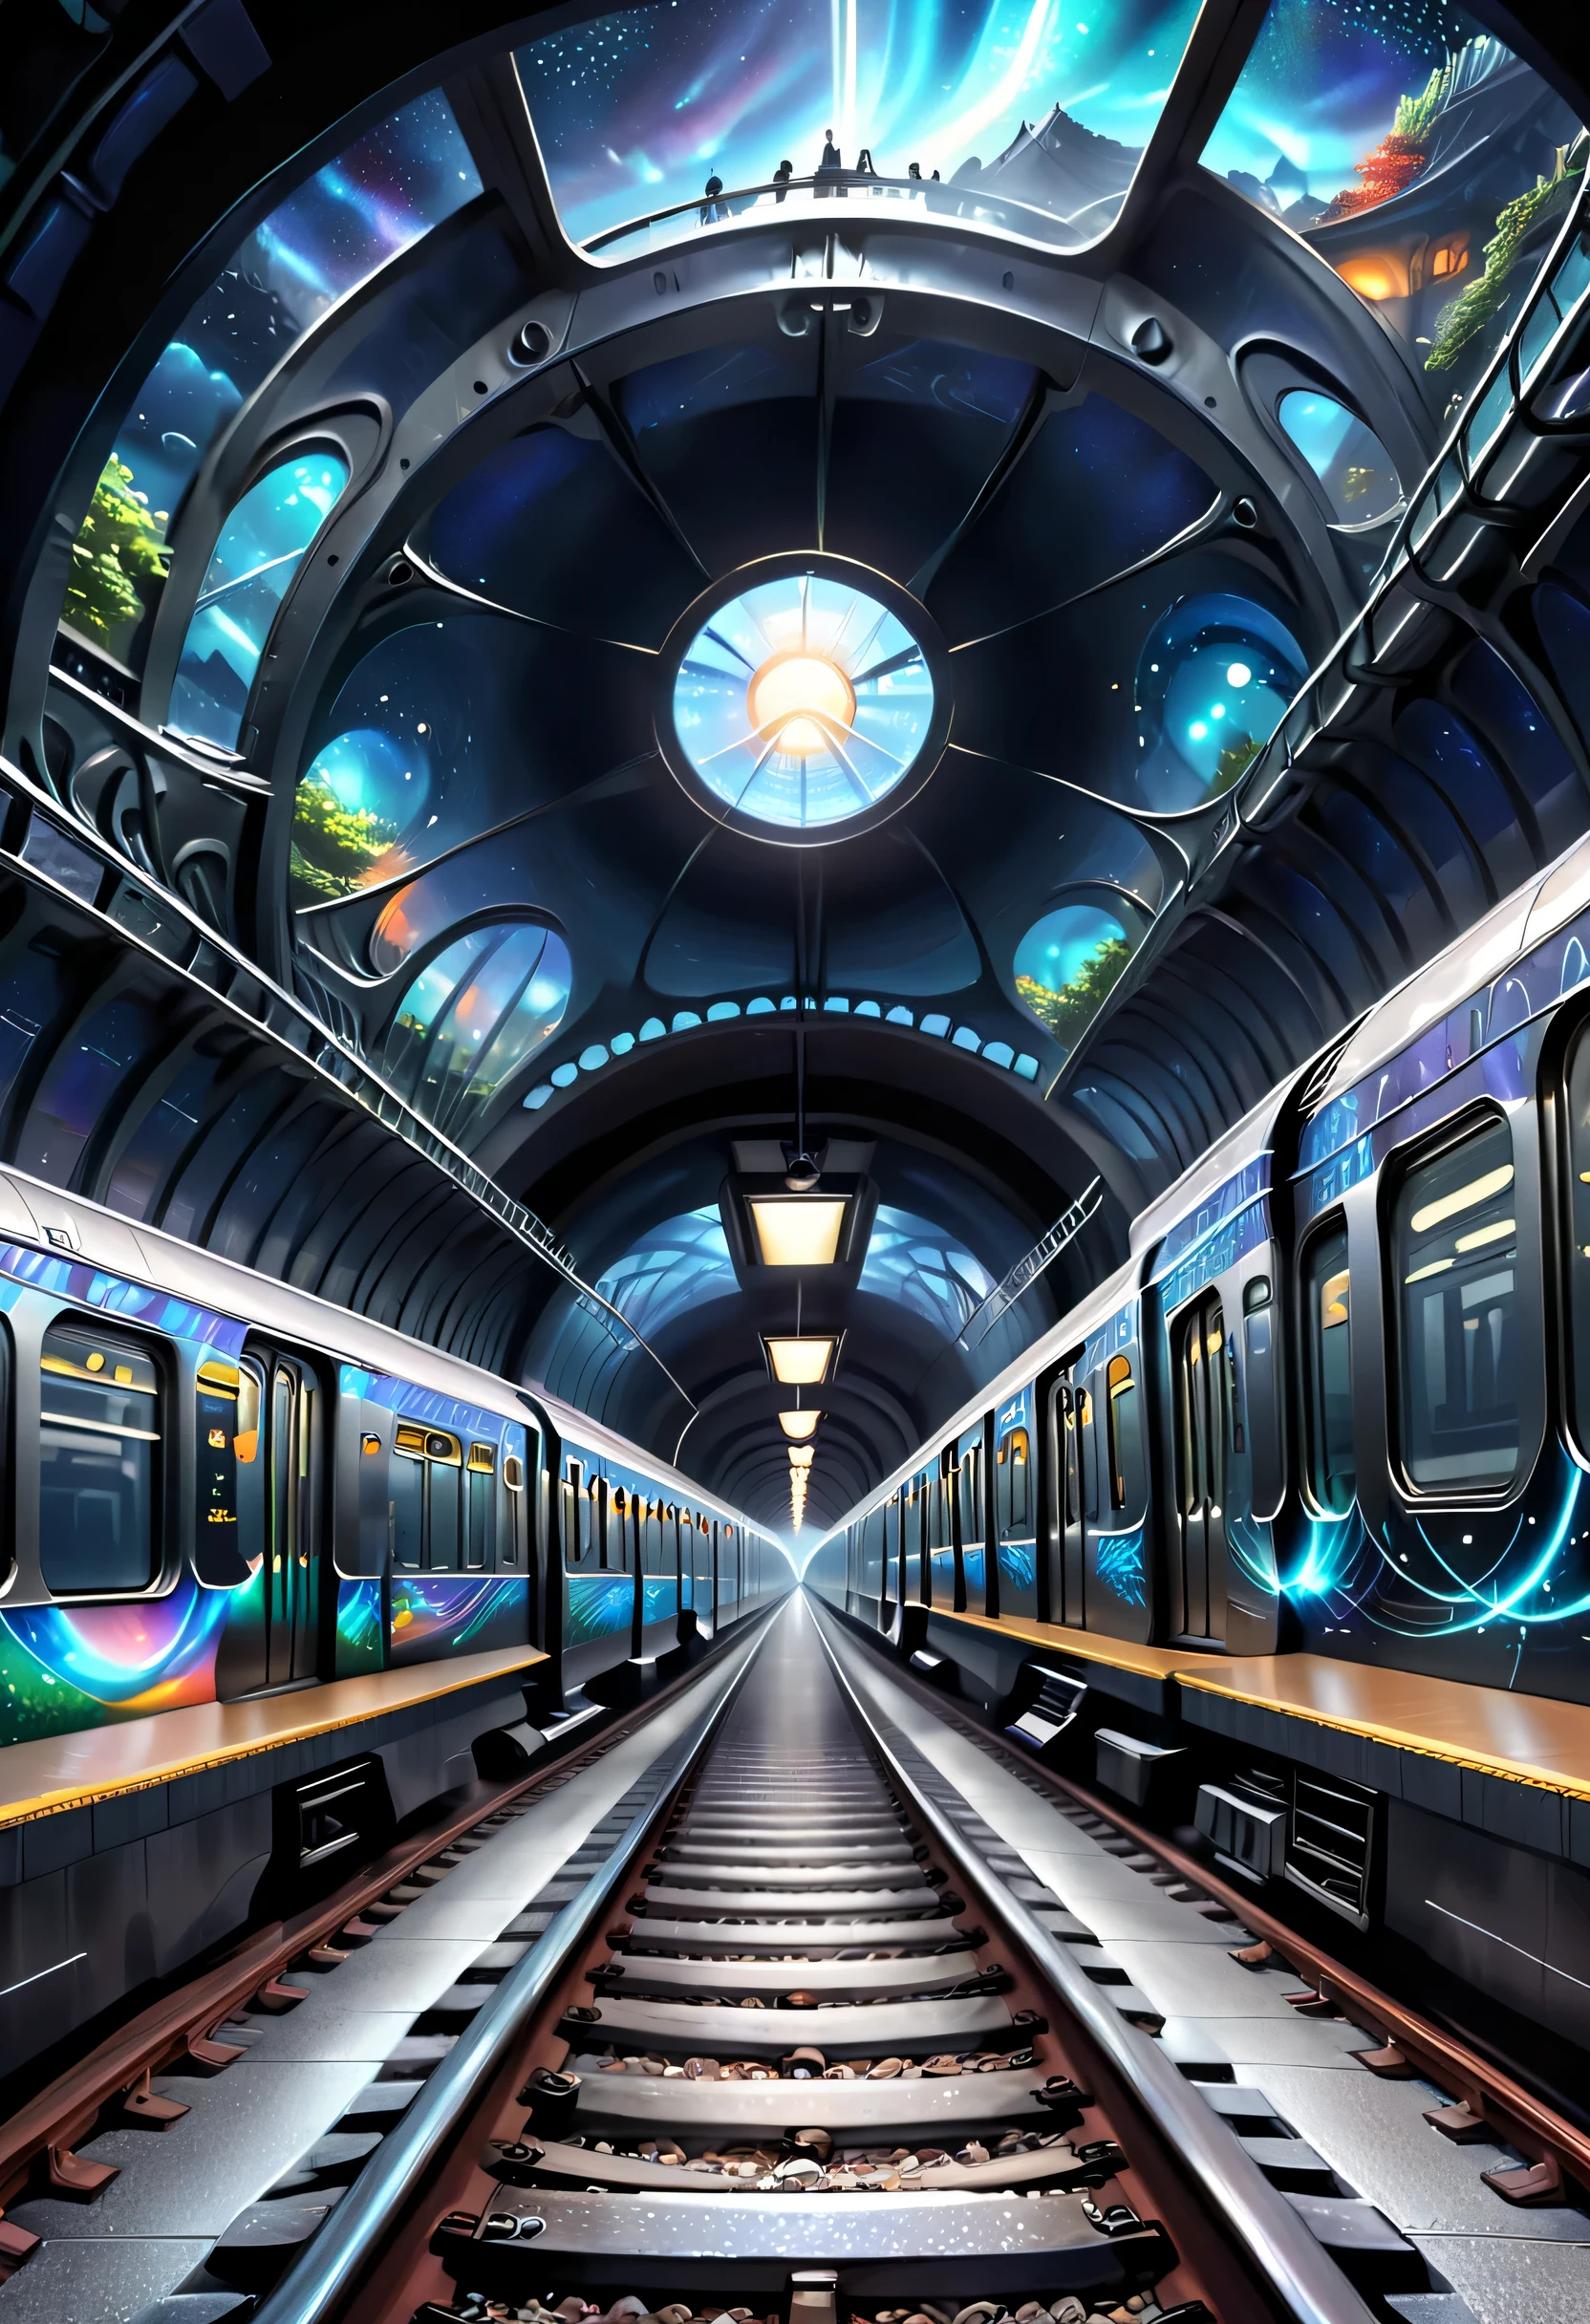 Es zeigt die Verbindung von U-Bahn-Gleisen mit einem anderen dimensionalen Raum。Es ist möglich, einen U-Bahn-Tunnel zu zeichnen，Einer der Abschnitte führt in eine andere dimensionale Welt，Abbildungen können eigenartige landschaftliche, mysteriöse Visionen und Passagiere aus verschiedenen Dimensionen zeigen。Der Star Dome-Zug dient als Übergang zwischen der normalen Welt und der anderen Dimension，Präsentiert eine mysteriöse und faszinierende Atmosphäre。